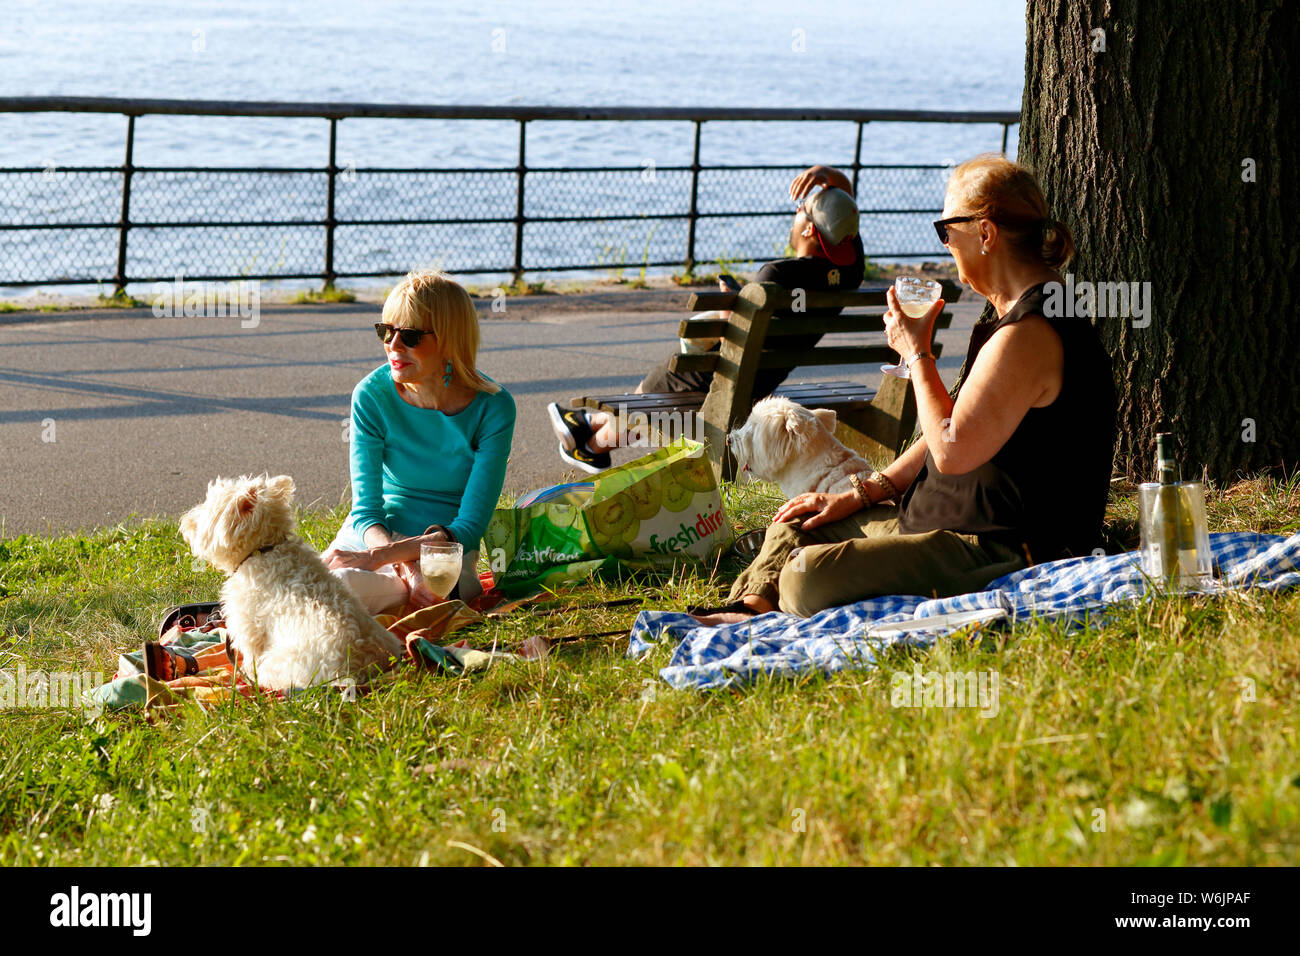 Deux femmes assises dans l'herbe dans le parc Riverside boire du vin bénéficiant d'un après-midi d'été avec leurs chiens Banque D'Images